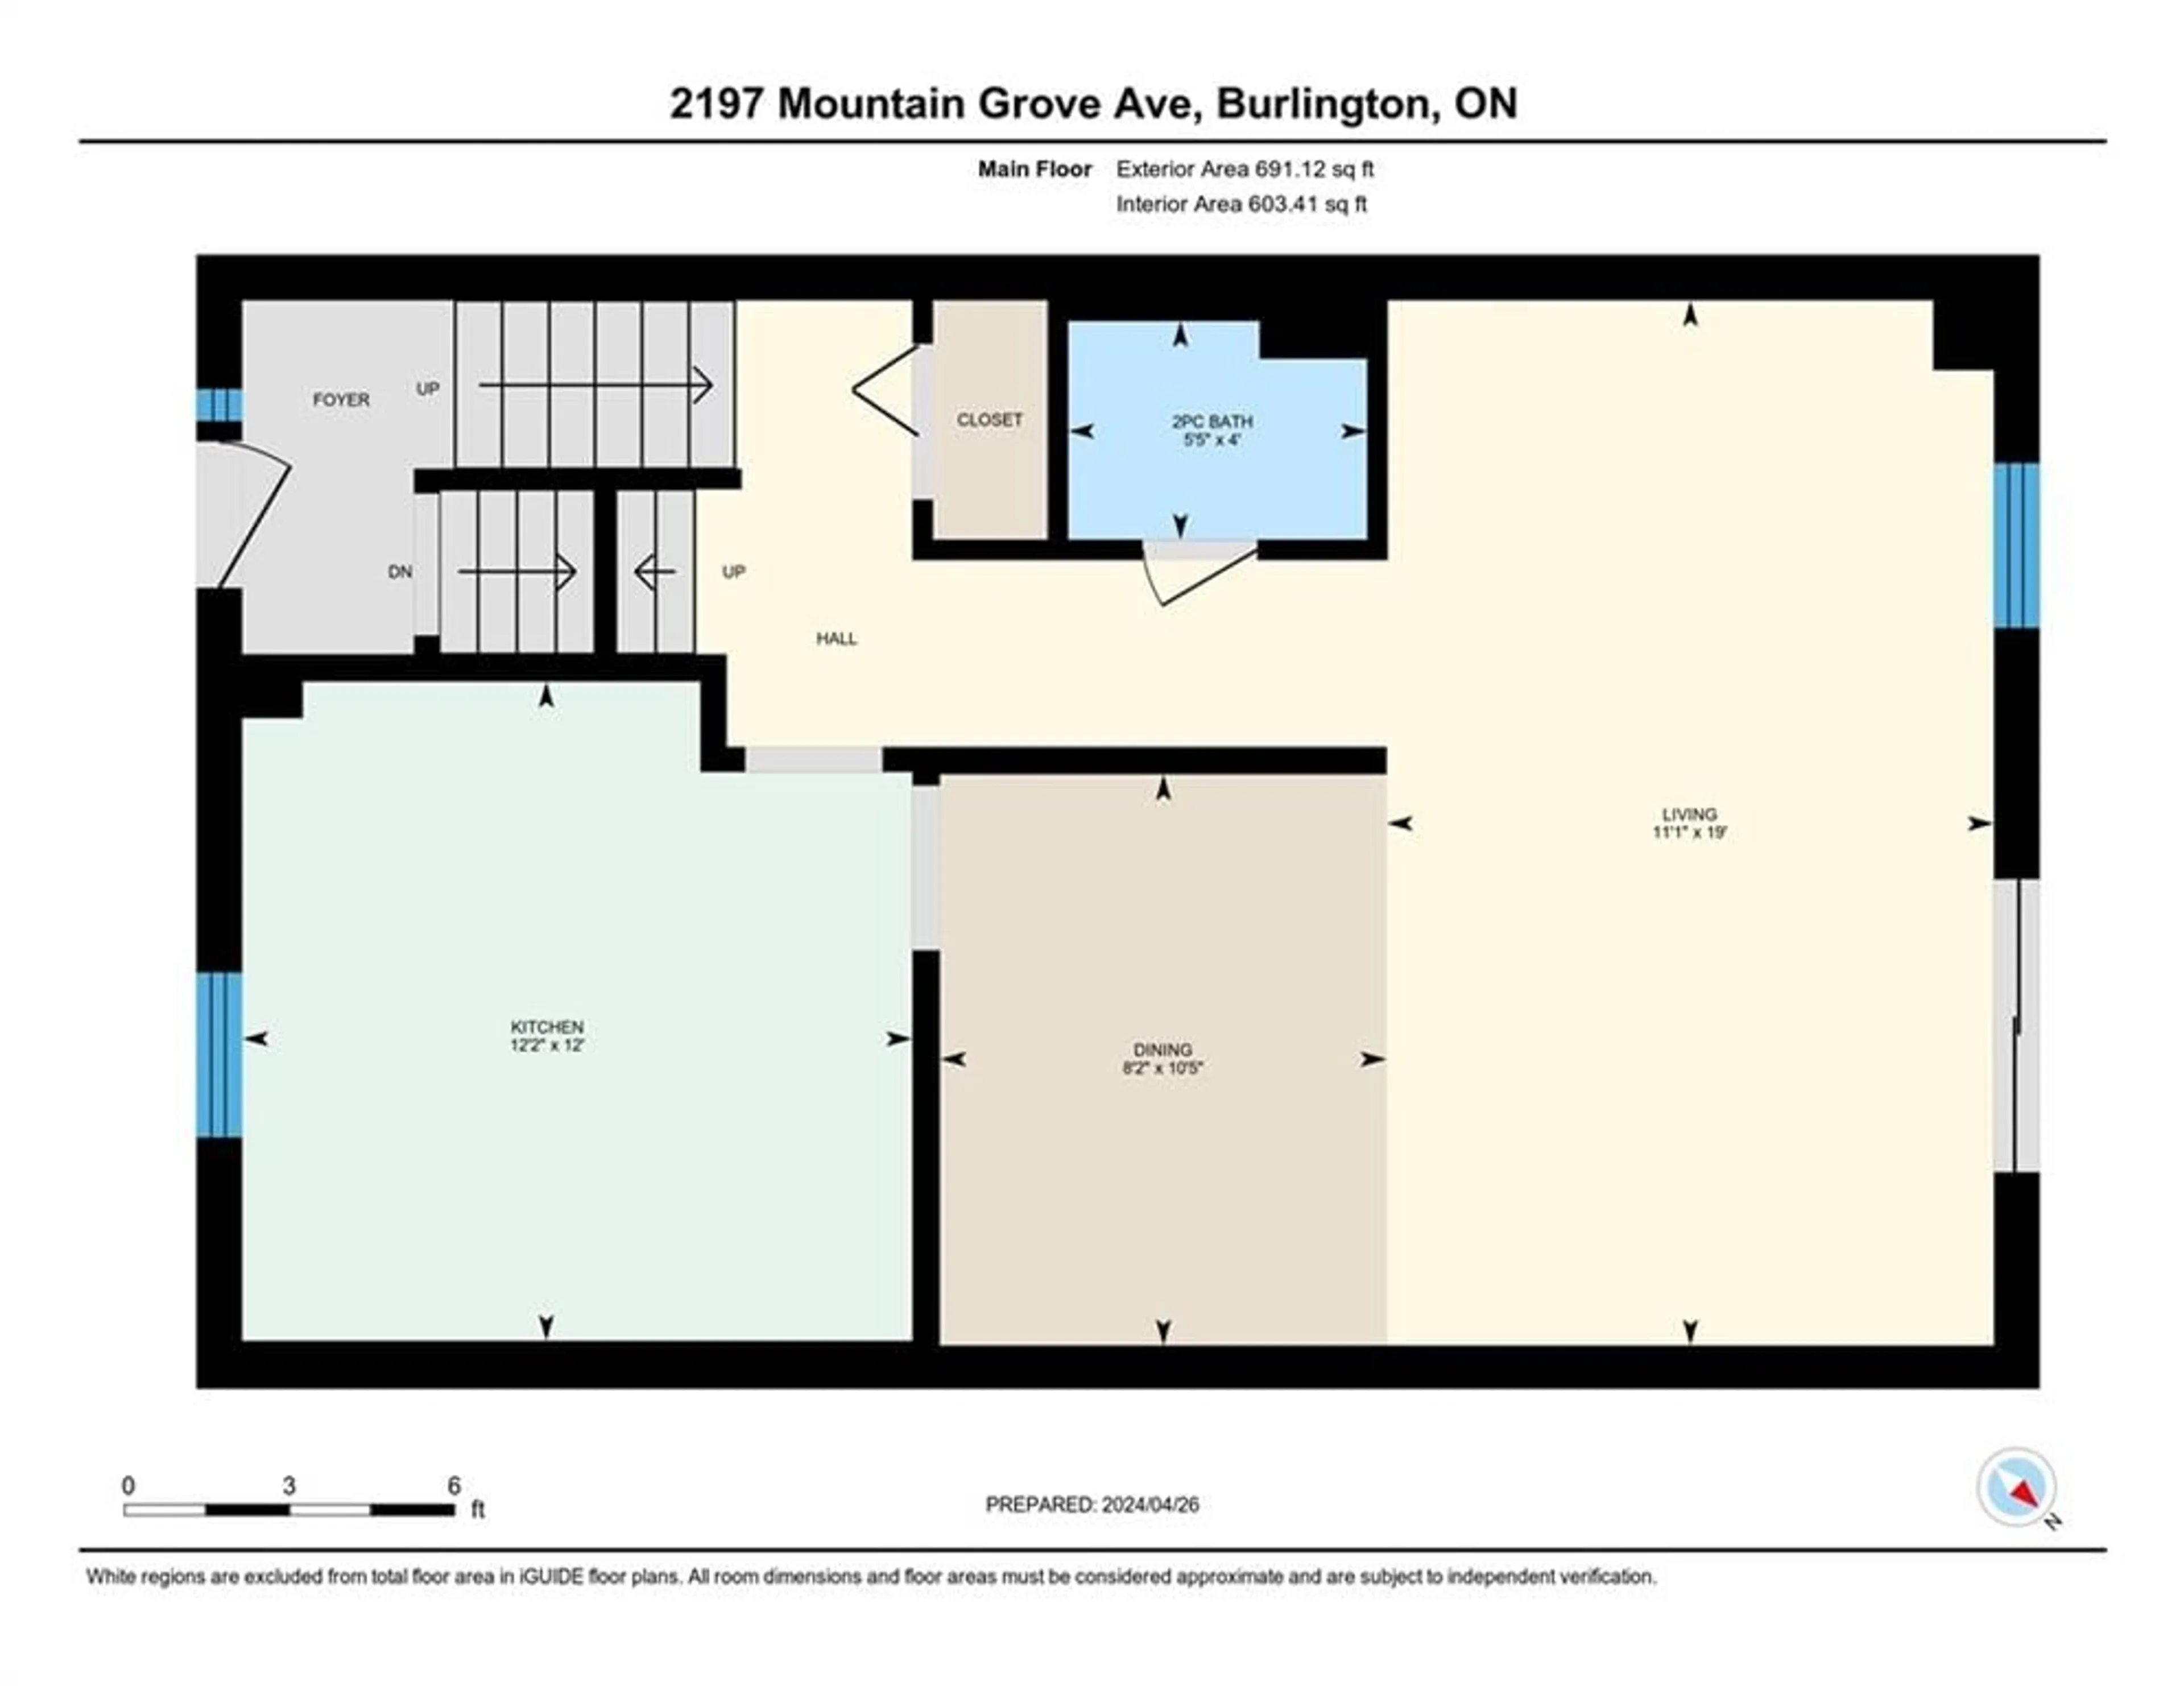 Floor plan for 2197 Mountain Grove Ave, Burlington Ontario L7P 2H8